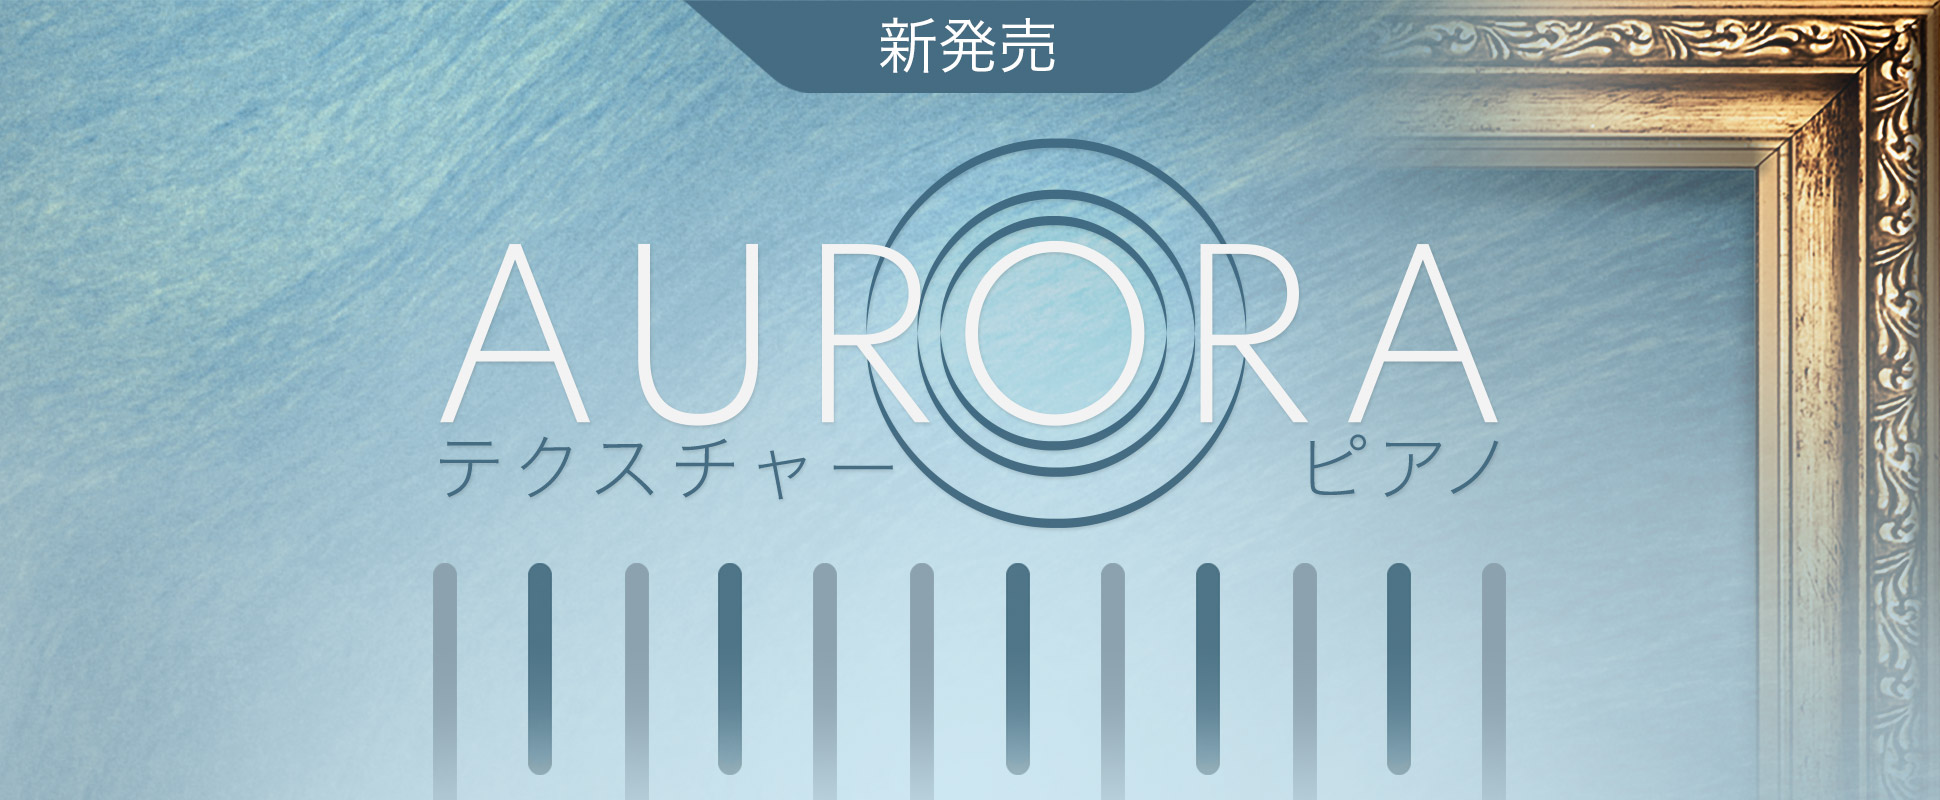 Aurora - New